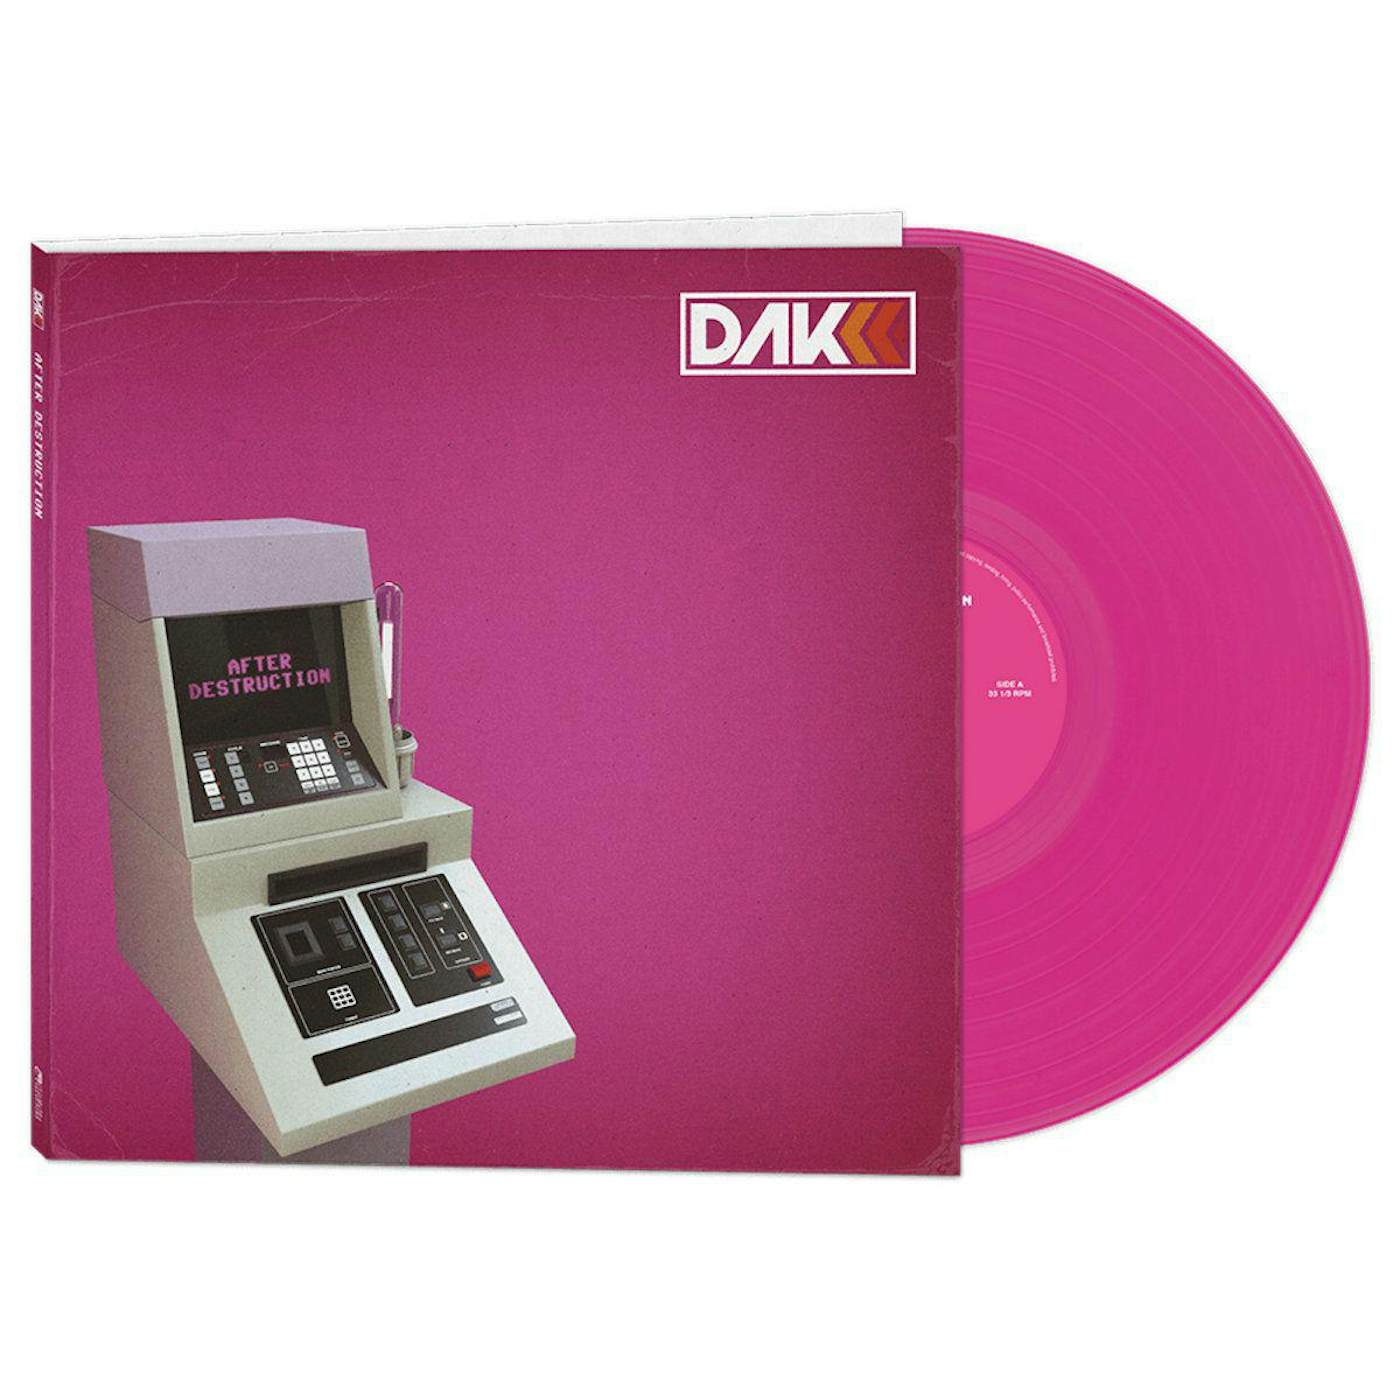 Descartes A Kant Afer Destruction - Pink Vinyl Record